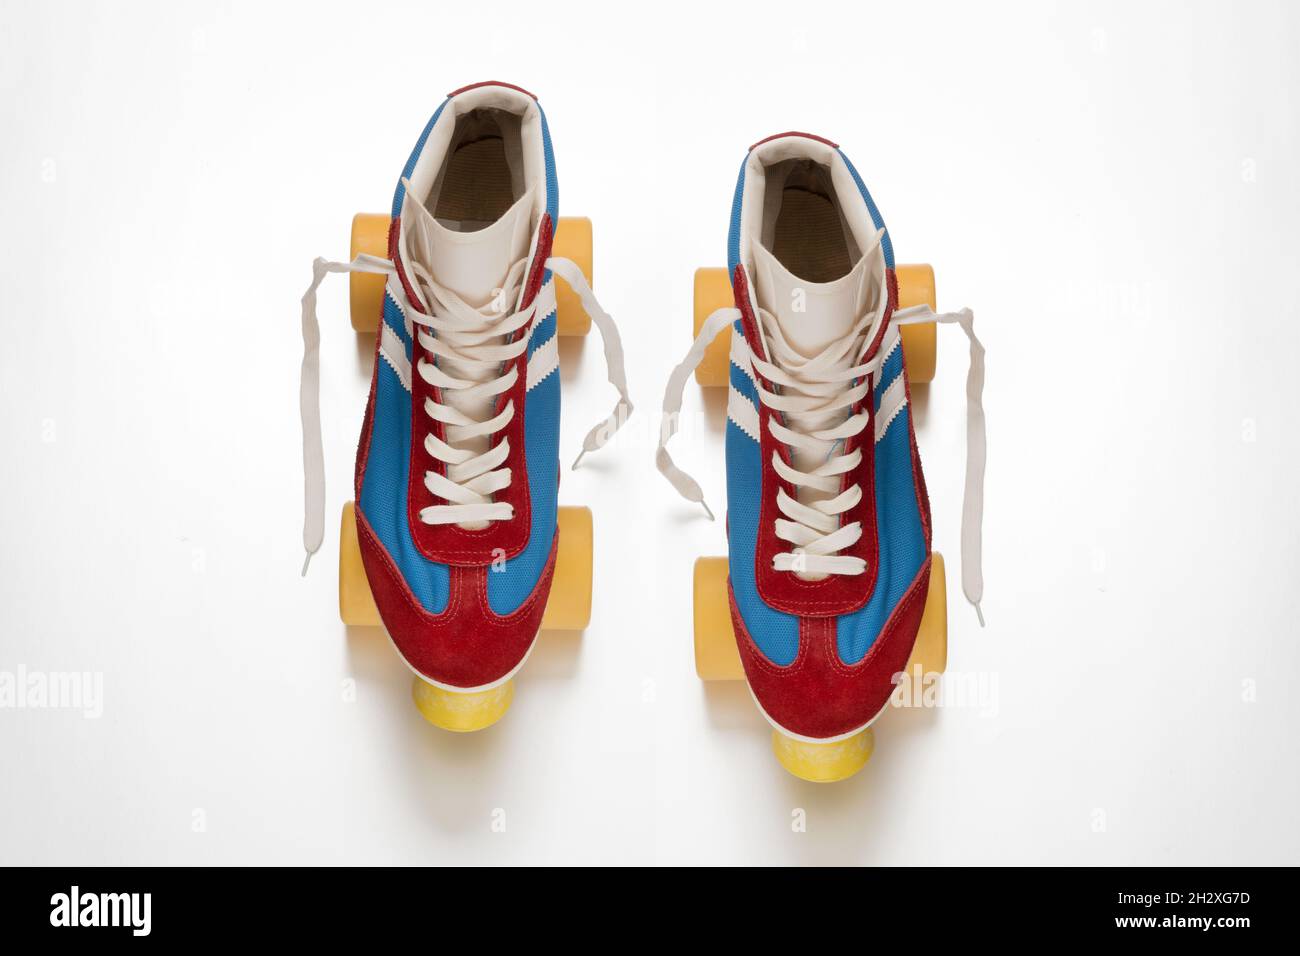 Draufsicht auf ein Paar altmodischer Quadroller-Schlittschuhe mit gelben Rädern und blauen und roten Stiefeln mit Schnürsenkeln auf weißer Oberfläche Stockfoto